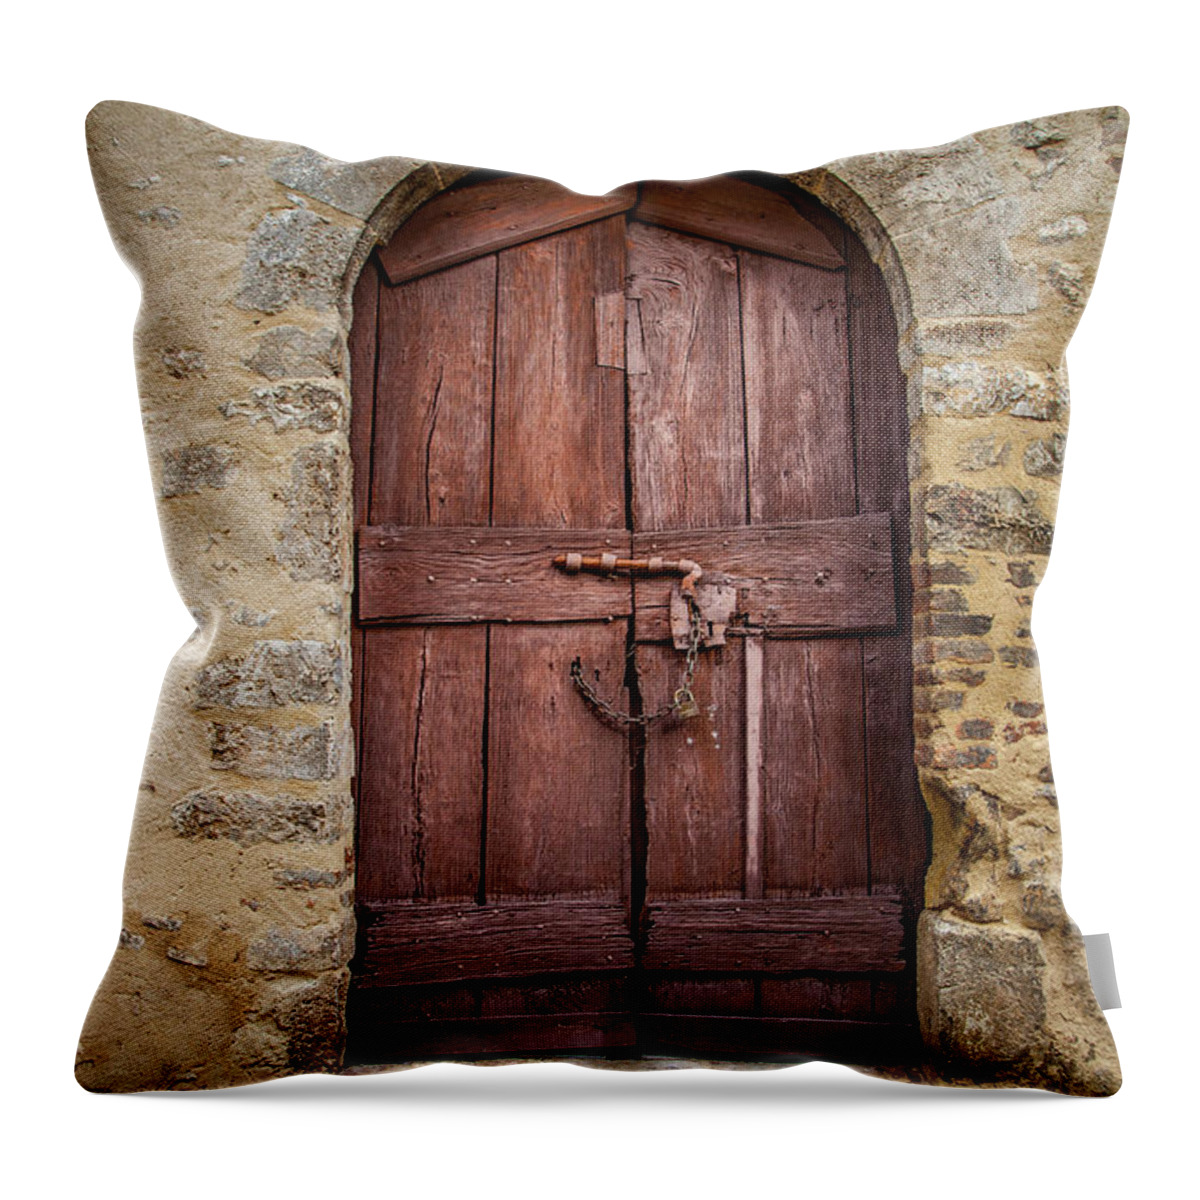 Doors Throw Pillow featuring the photograph An Old Door in Cesi #1 by W Chris Fooshee